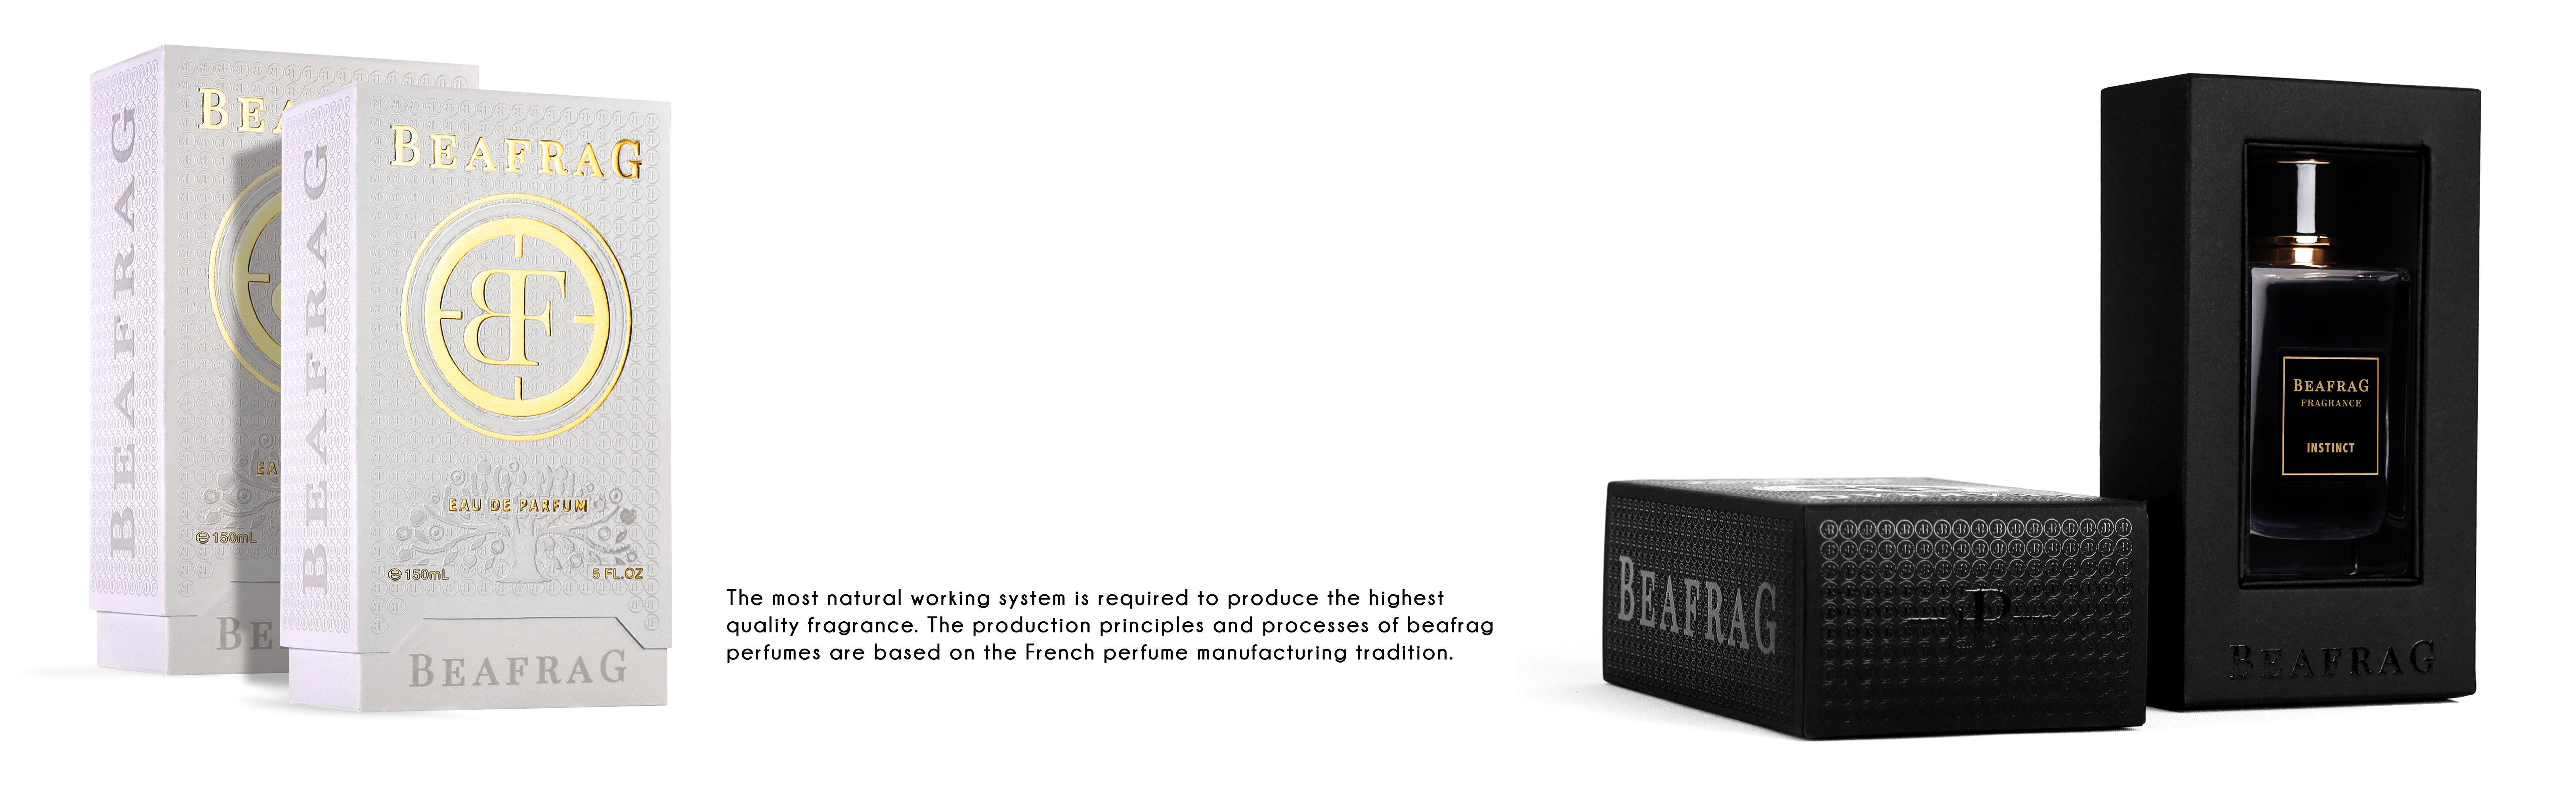 Beafrag_perfume_packaging_.png (6.45 MB)